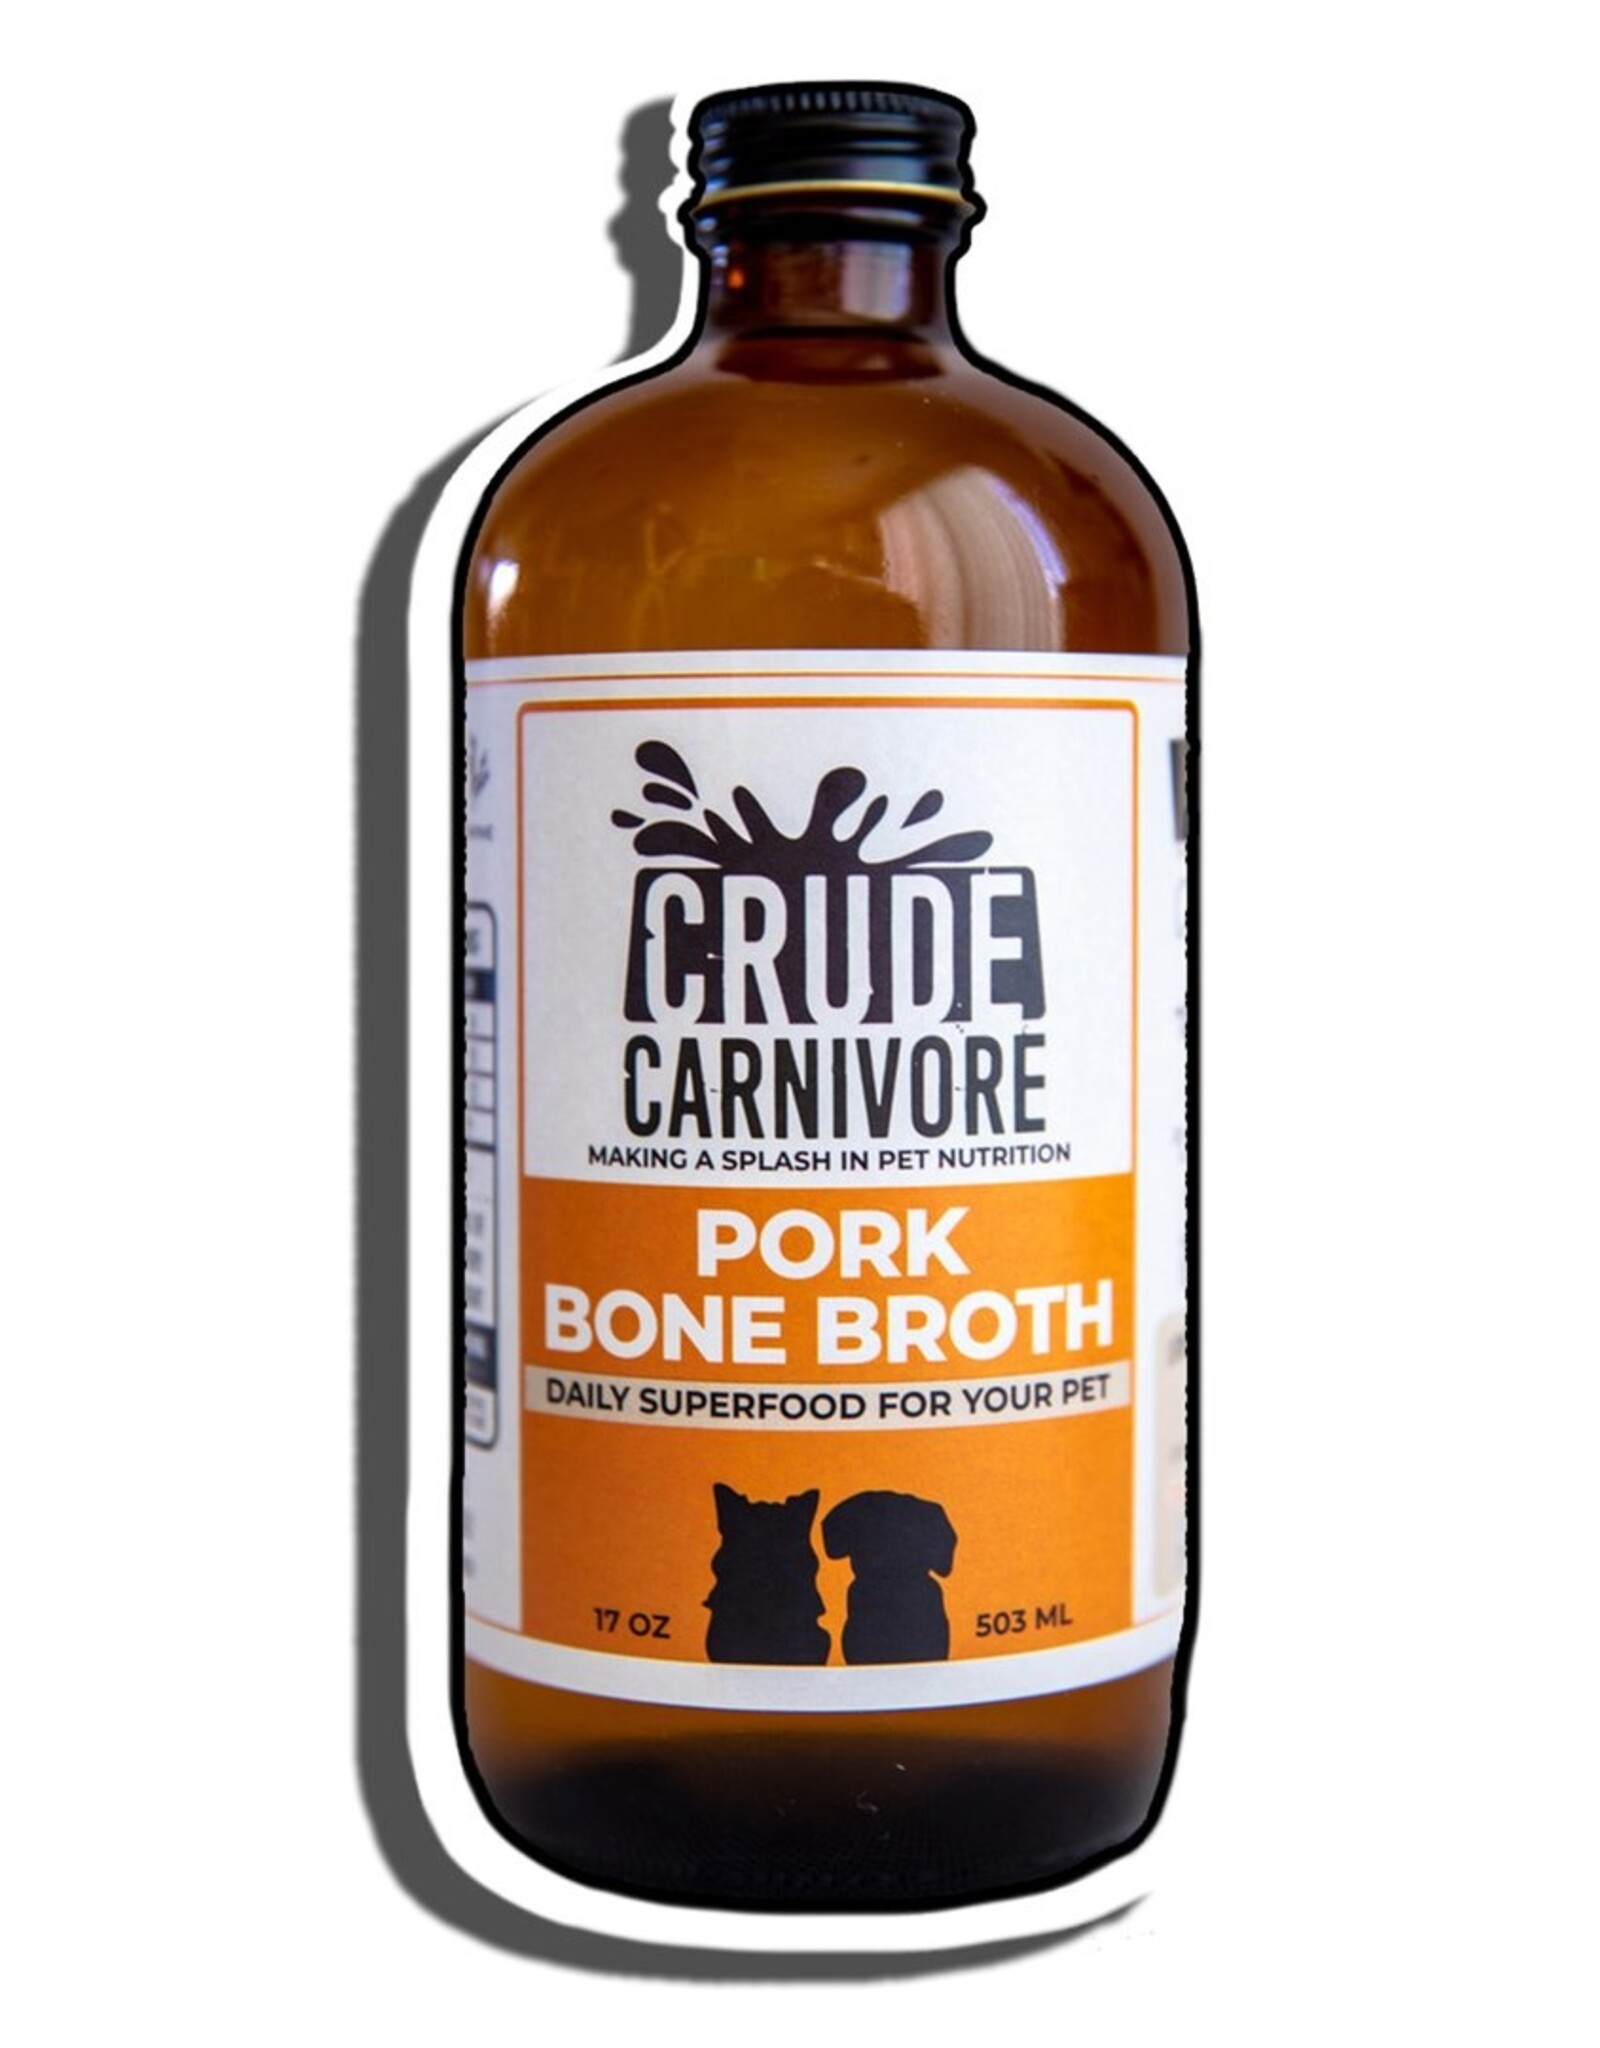 Crude Carnivore Pork Bone Broth 17oz